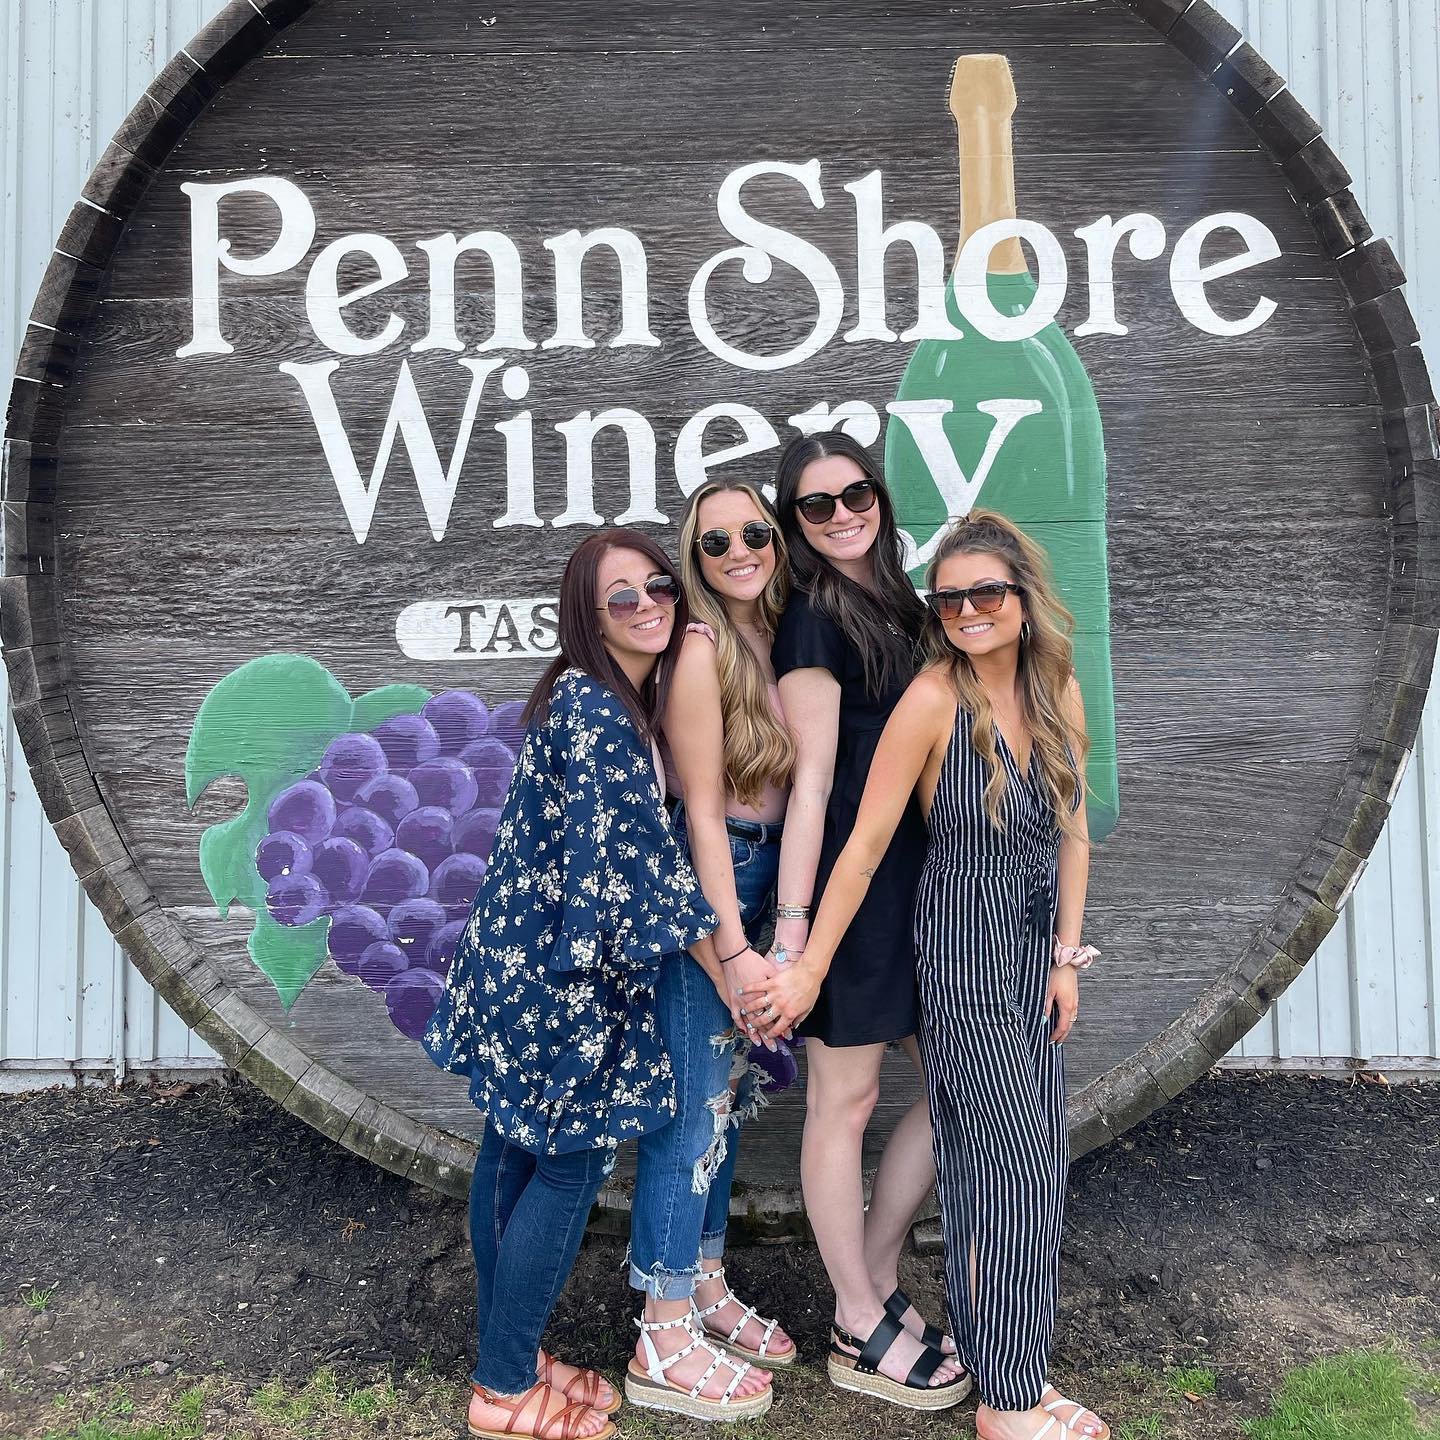 Penn Shore Winery by tayliebiro